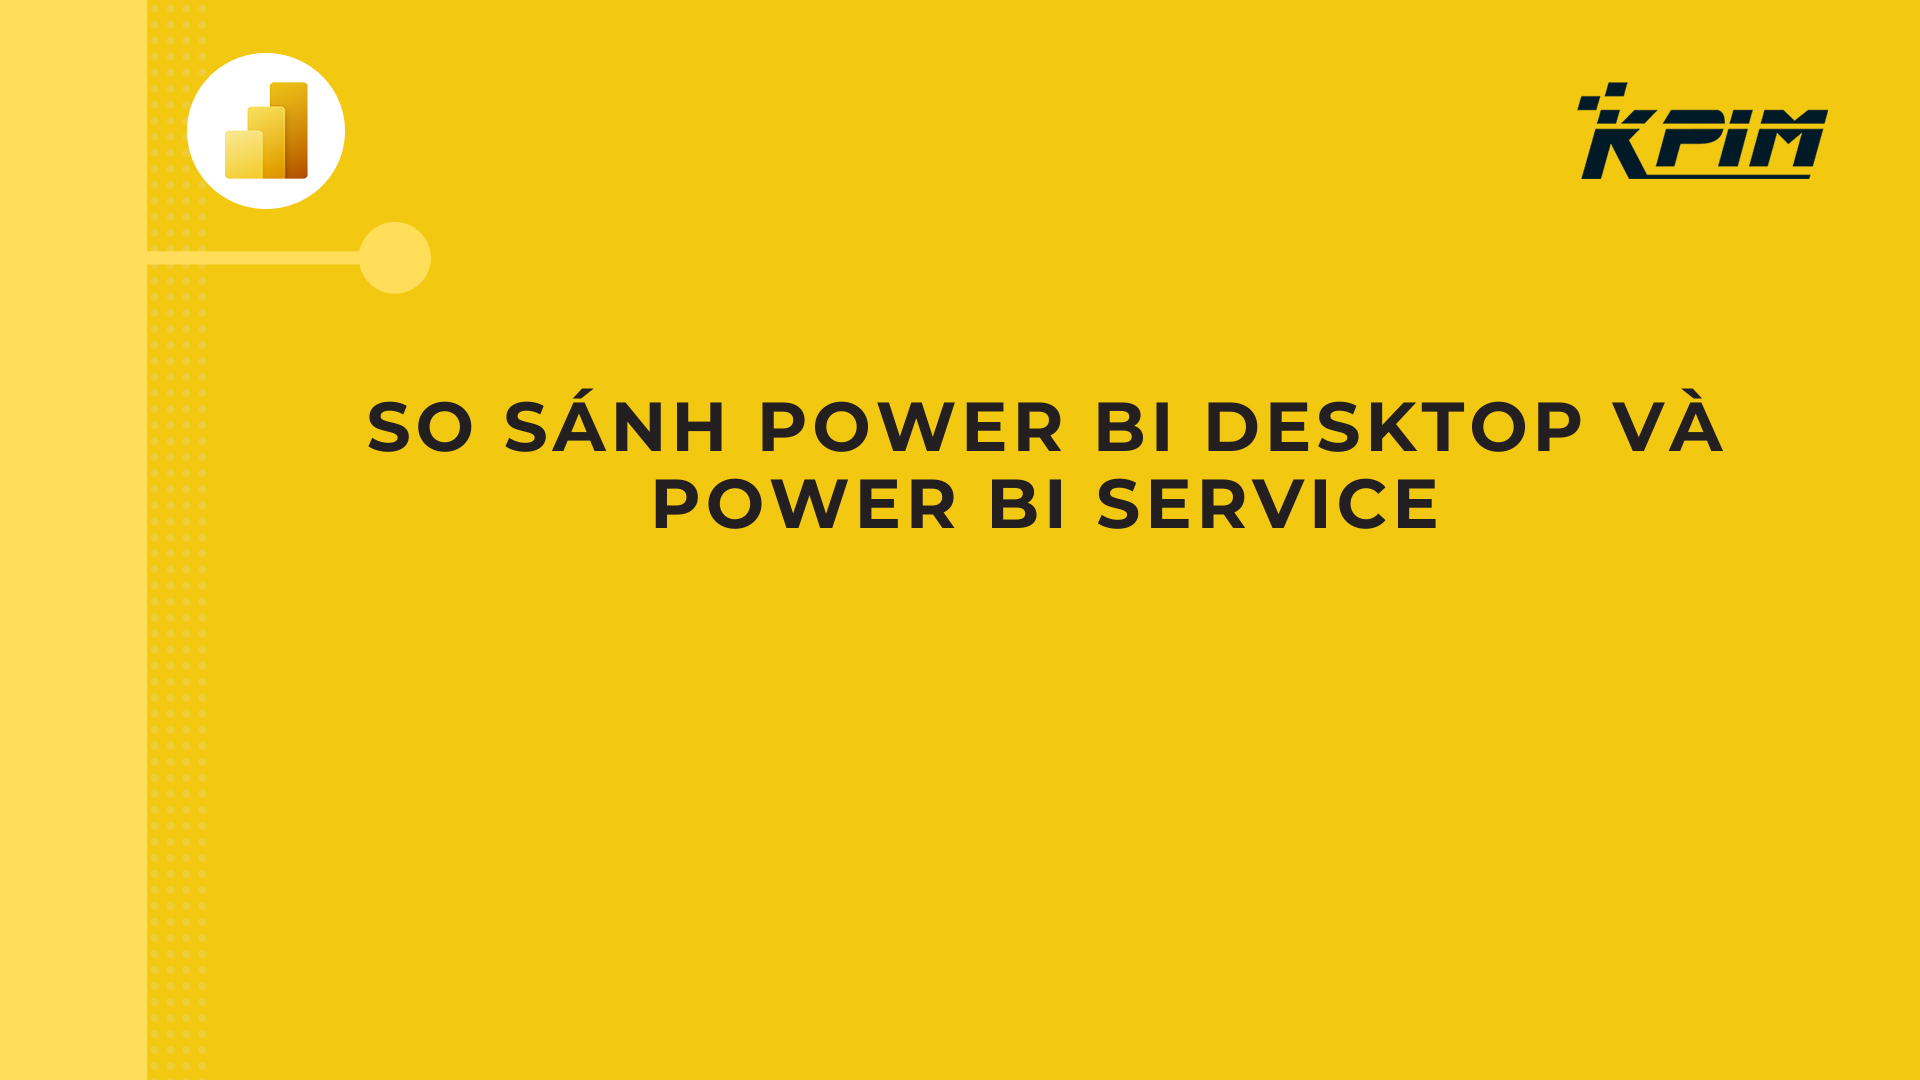 Power BI service là gì?
